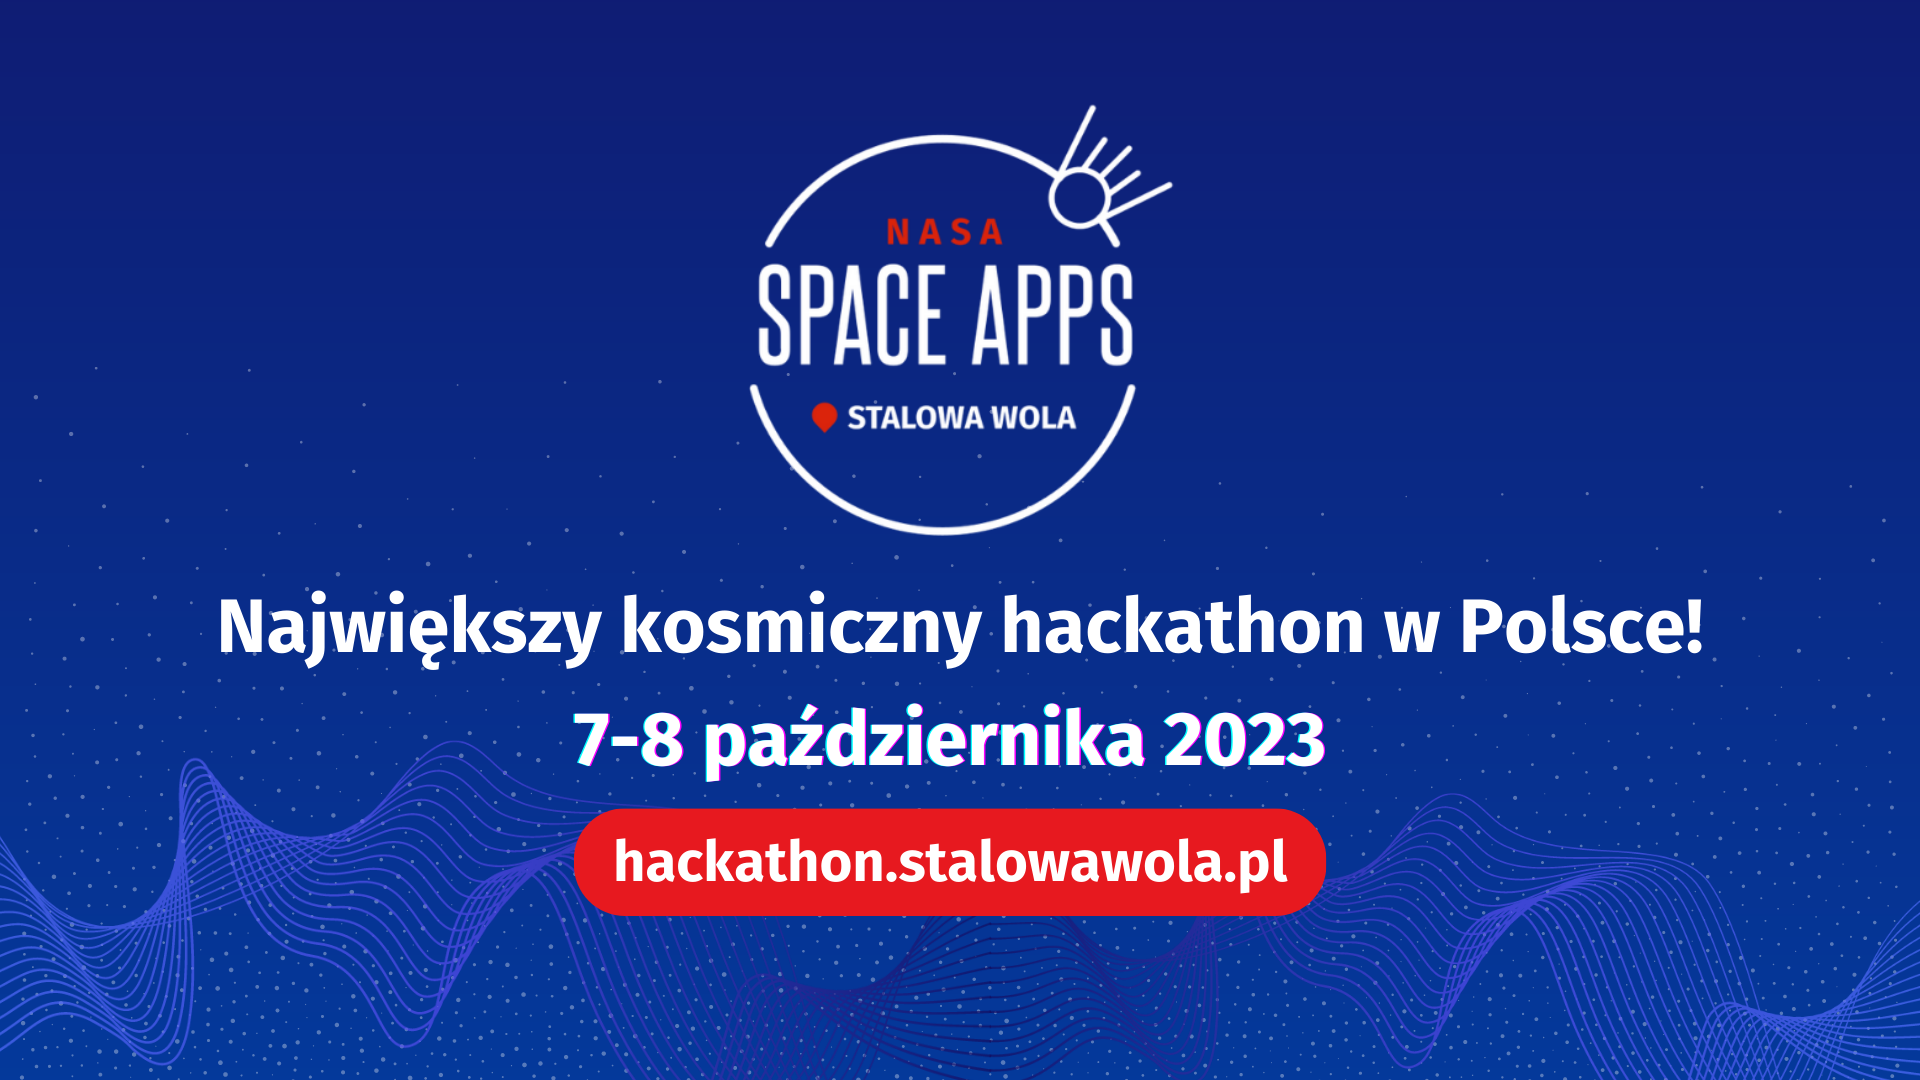 Największy kosmiczny hackathon w Polsce – tej jesieni w Stalowej Woli